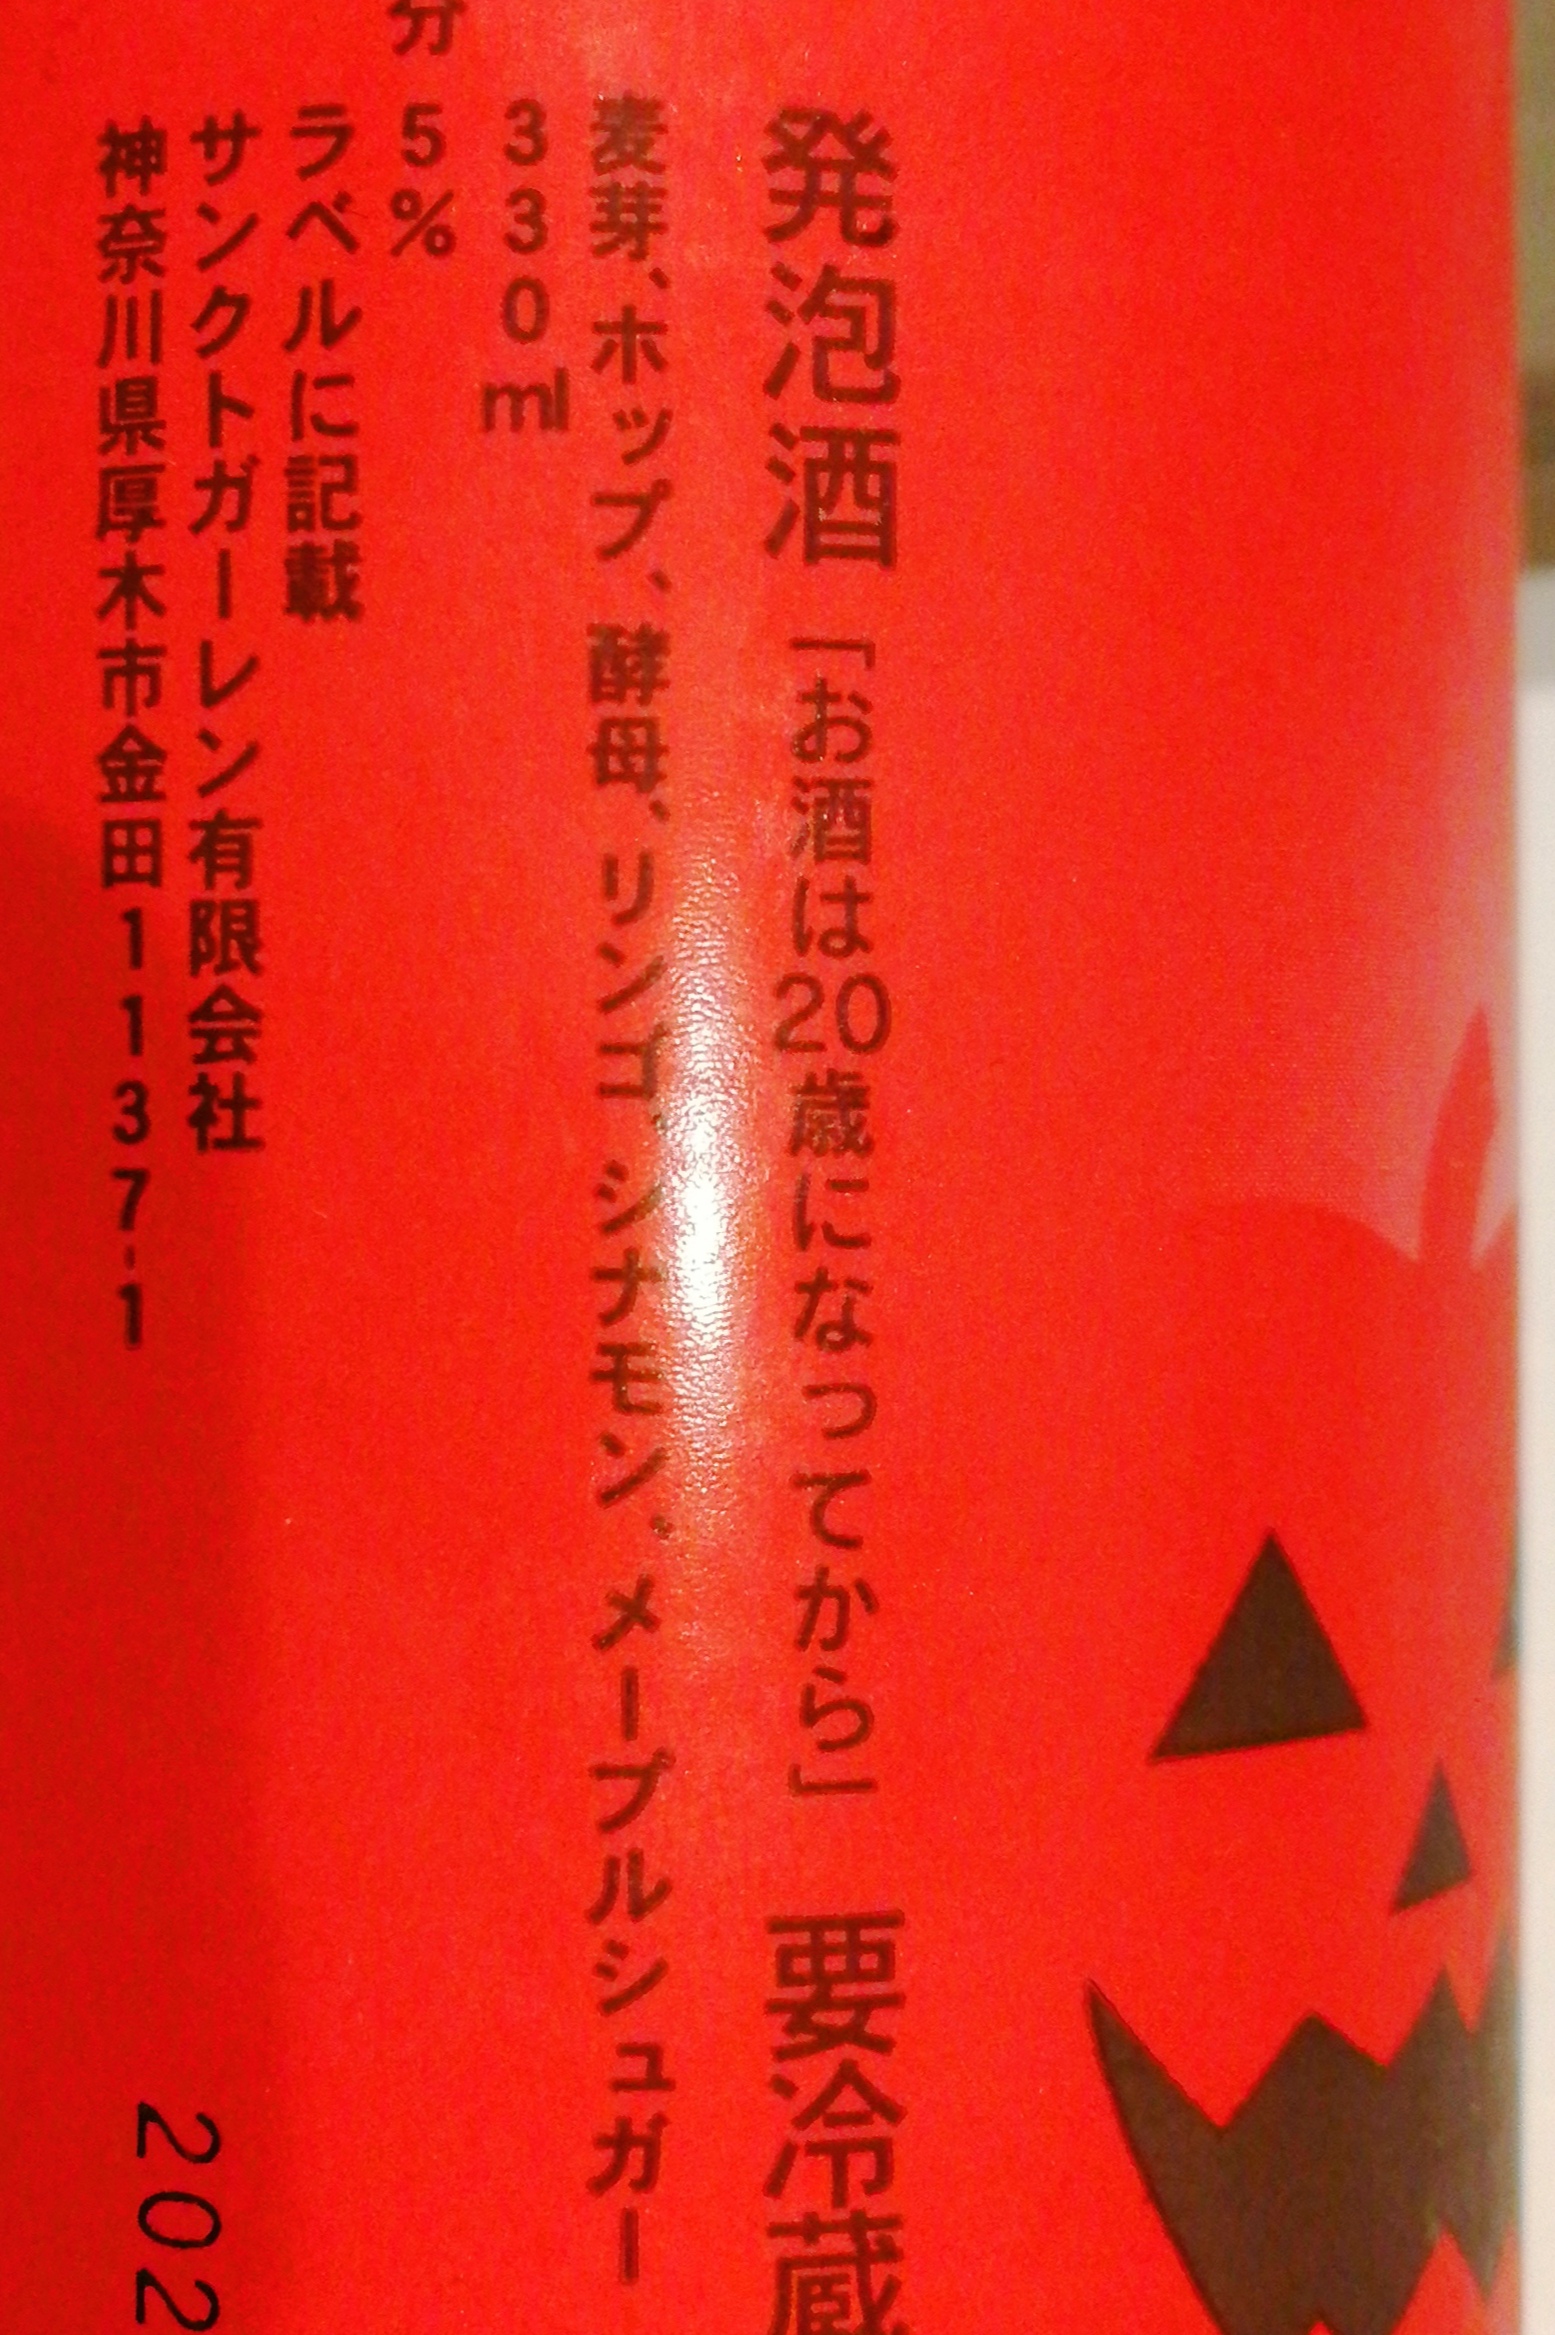 神奈川 サンクトガーレン アップルシナモンエール【秋冬限定ビール】